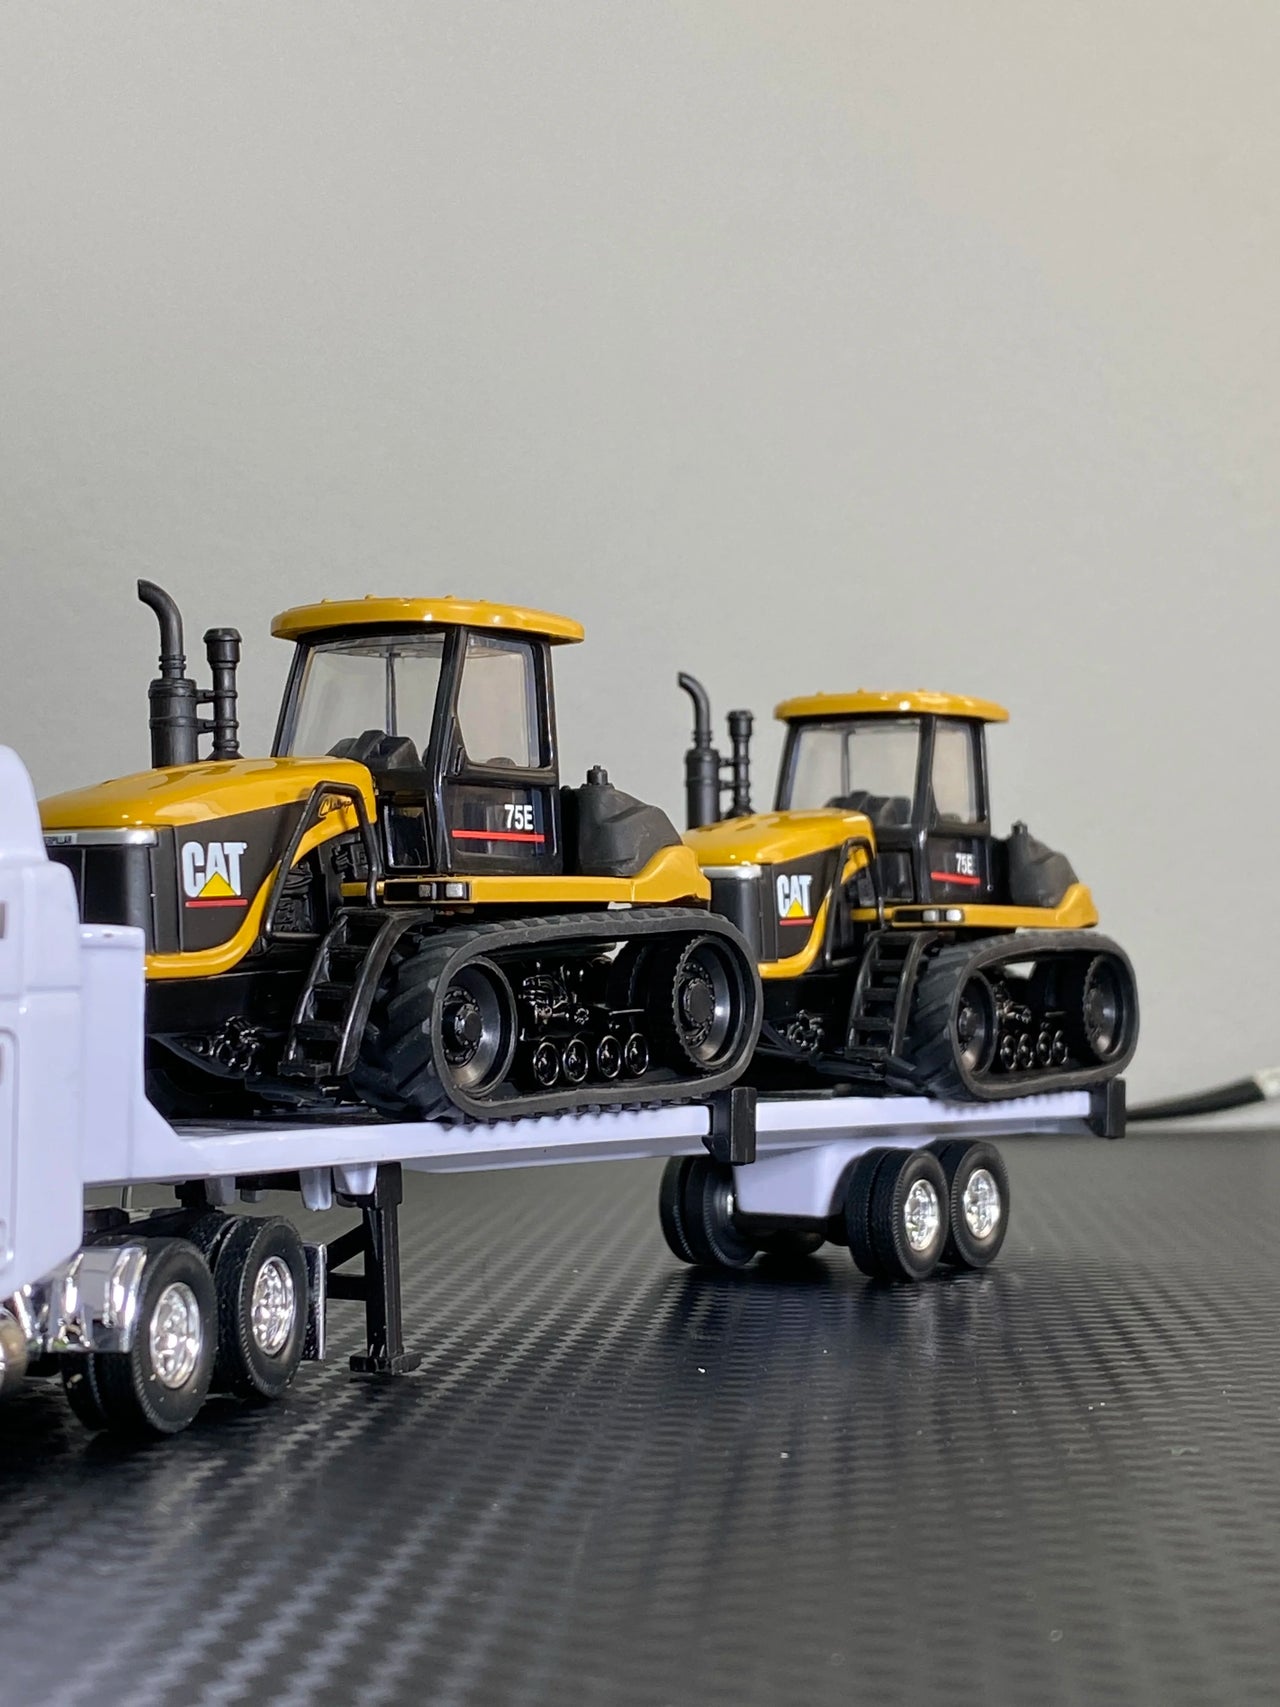 55082 Cama Baja Caterpillar & Dos Tractores Agrícolas Caterpillar 75E Escala 1:64 (Modelo Descontinuado)